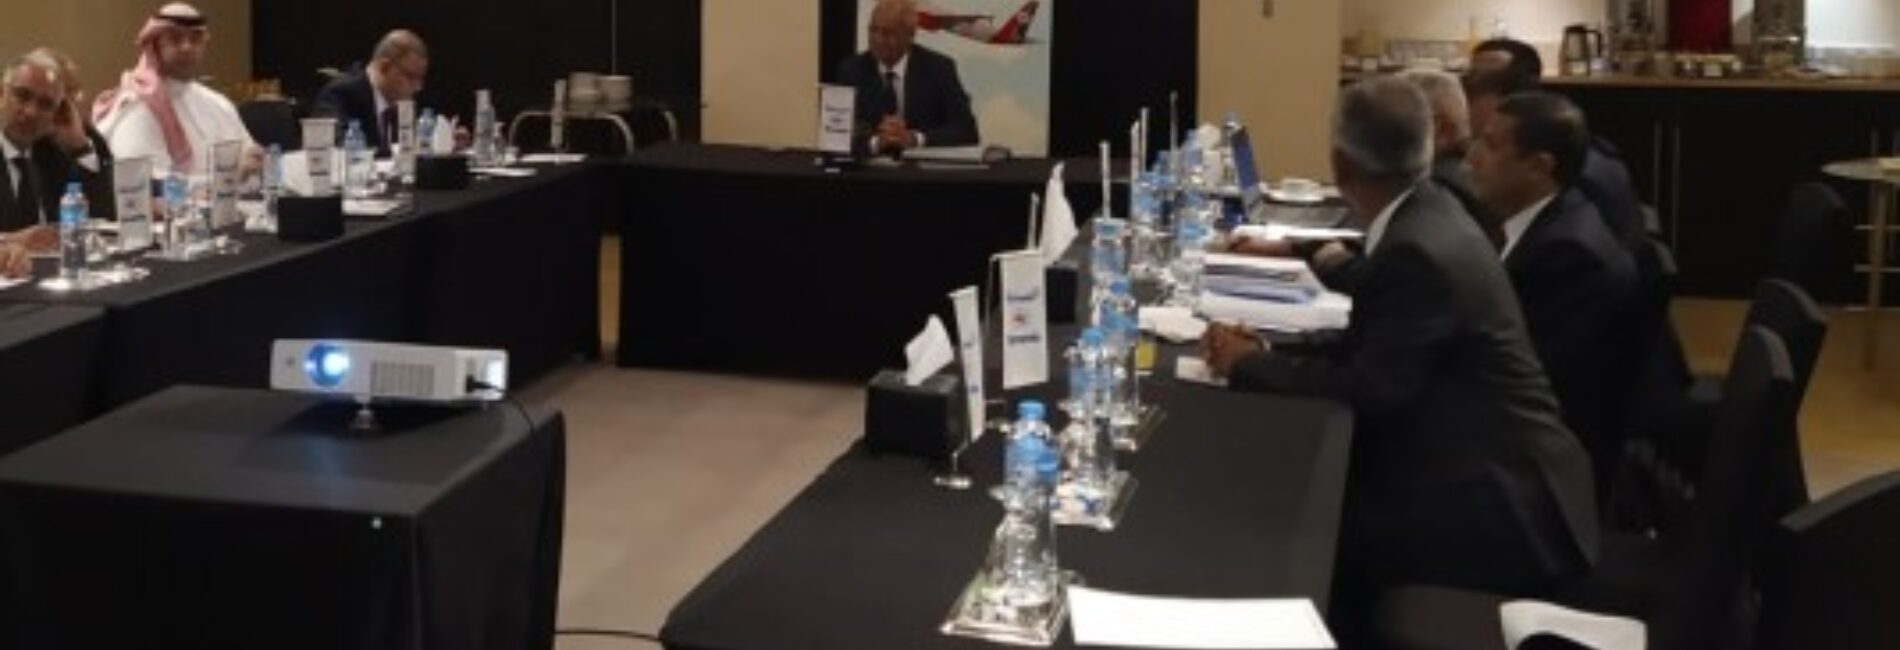 مجلس إدارة الخطوط الجوية اليمنية يعقد اجتماعه الدوري في القاهرة برئاسة الكابتن العلواني